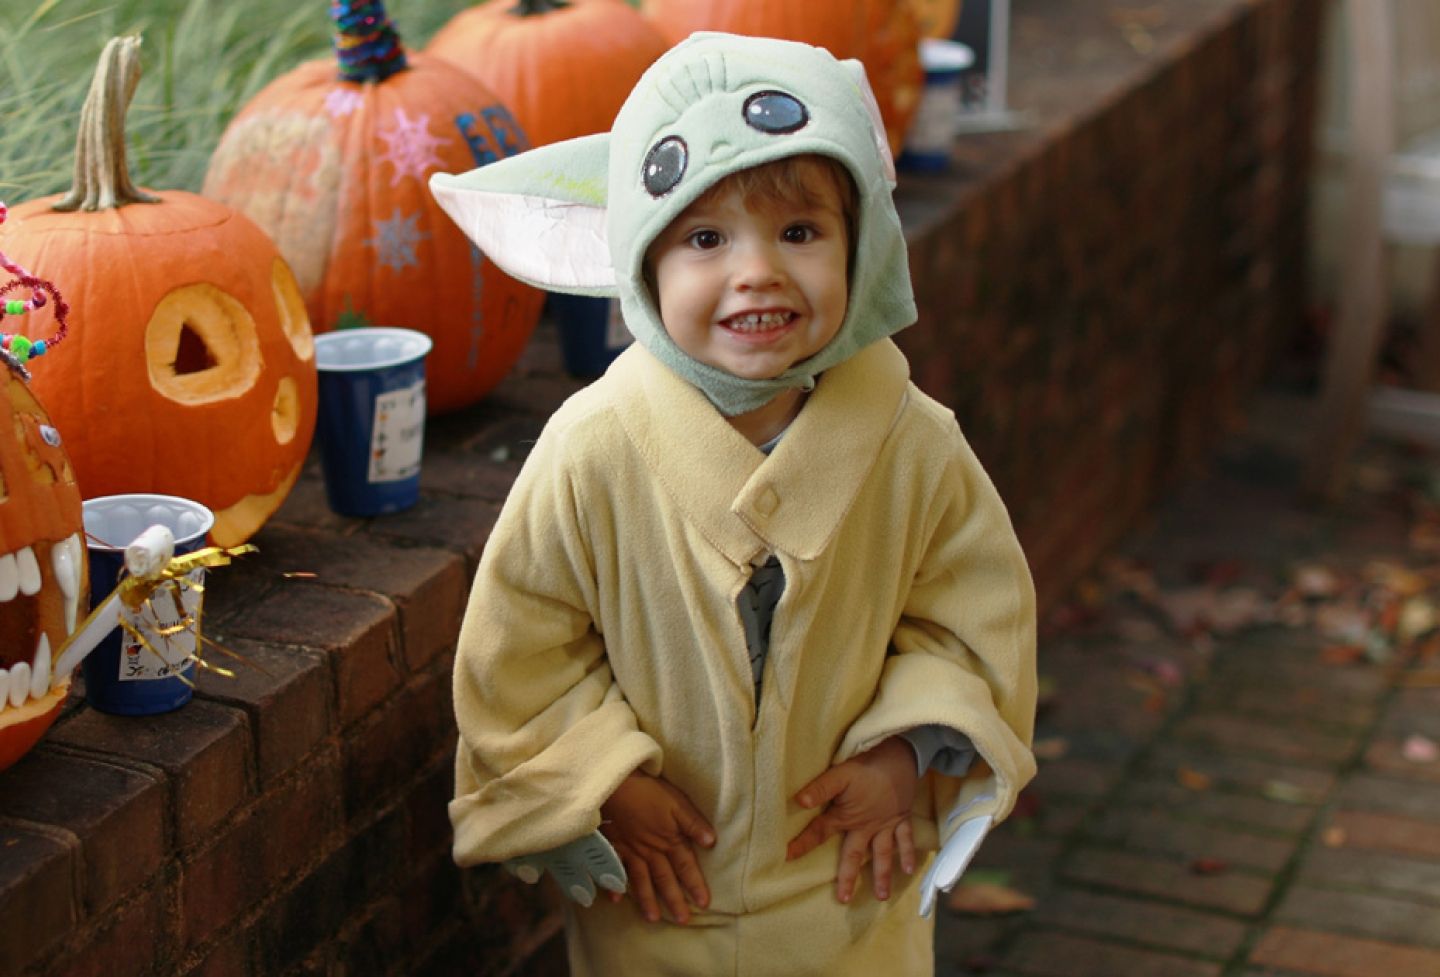 Child in Halloween costume in front of pumpkins